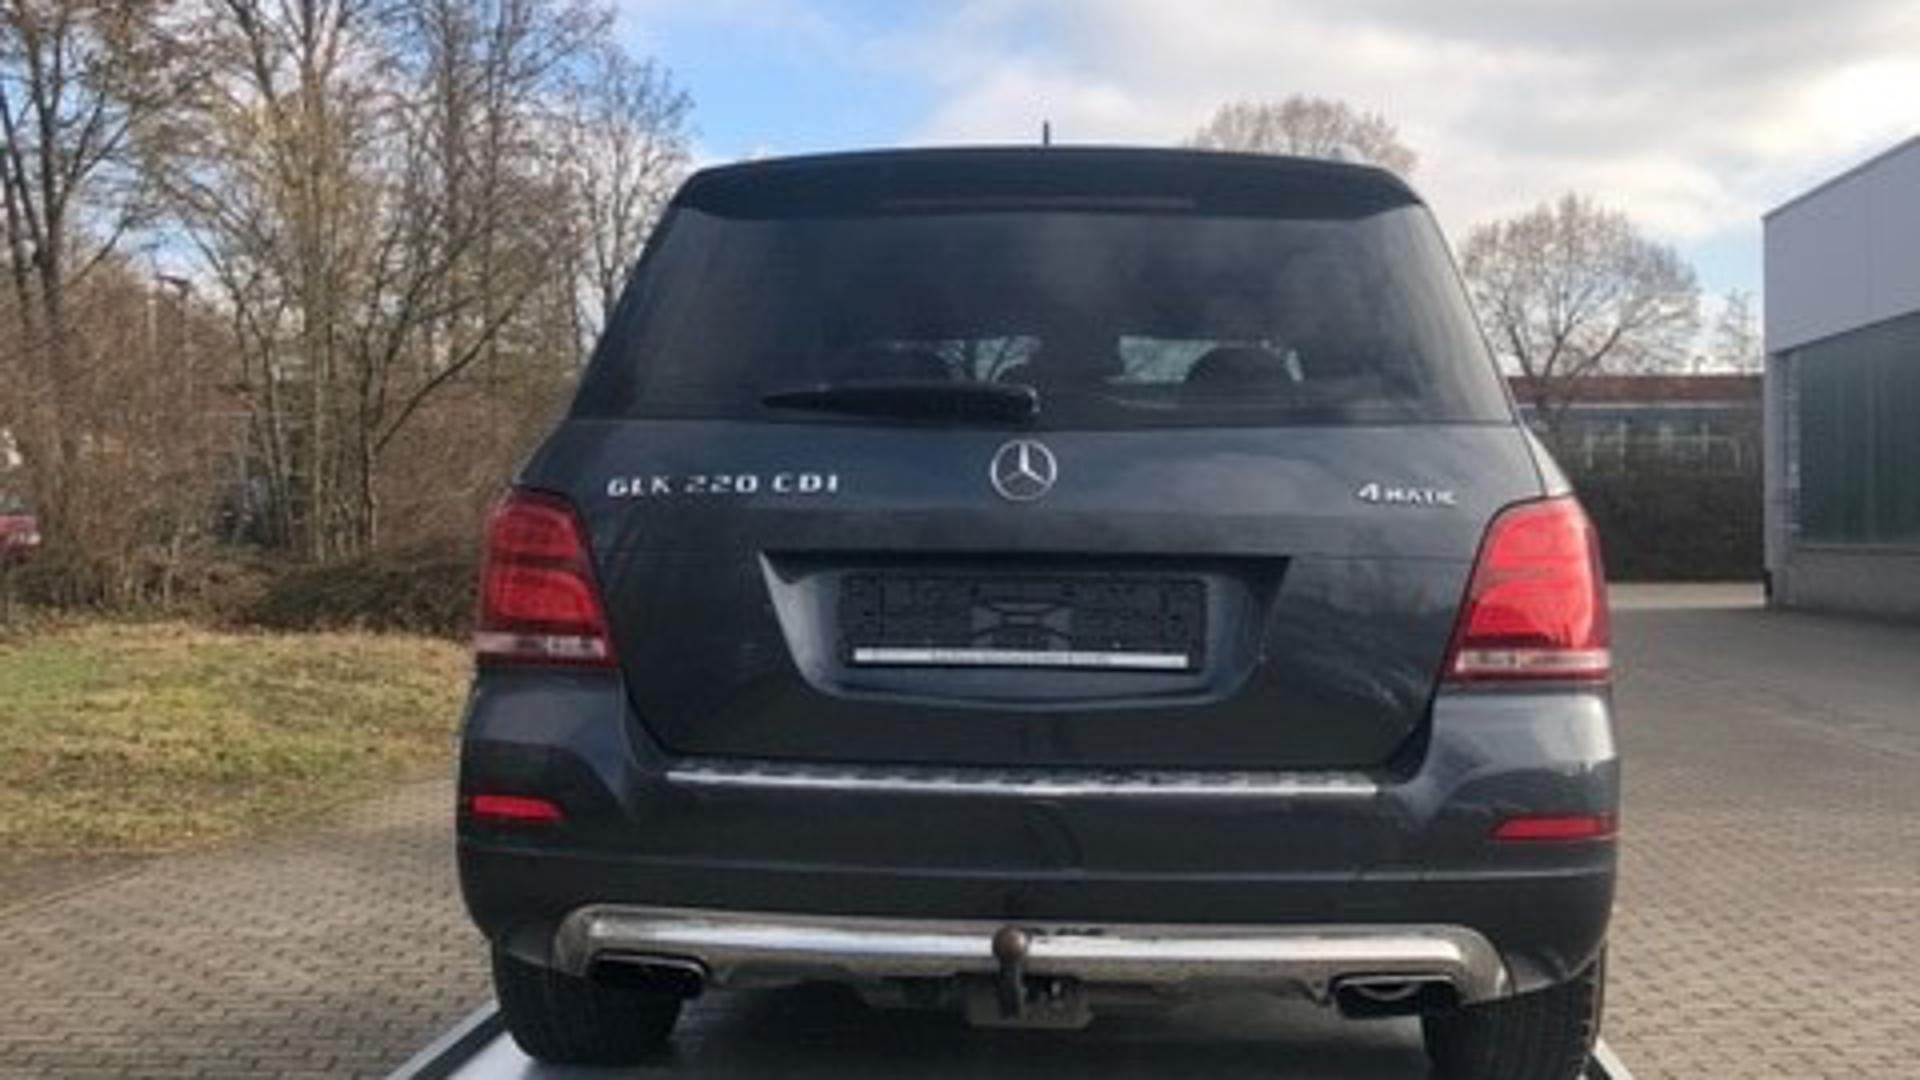 Schwarzer Mercedes Benz GLK auf einem Autoanhänger wurde geklaut. Polizei sucht nach Zeugen.